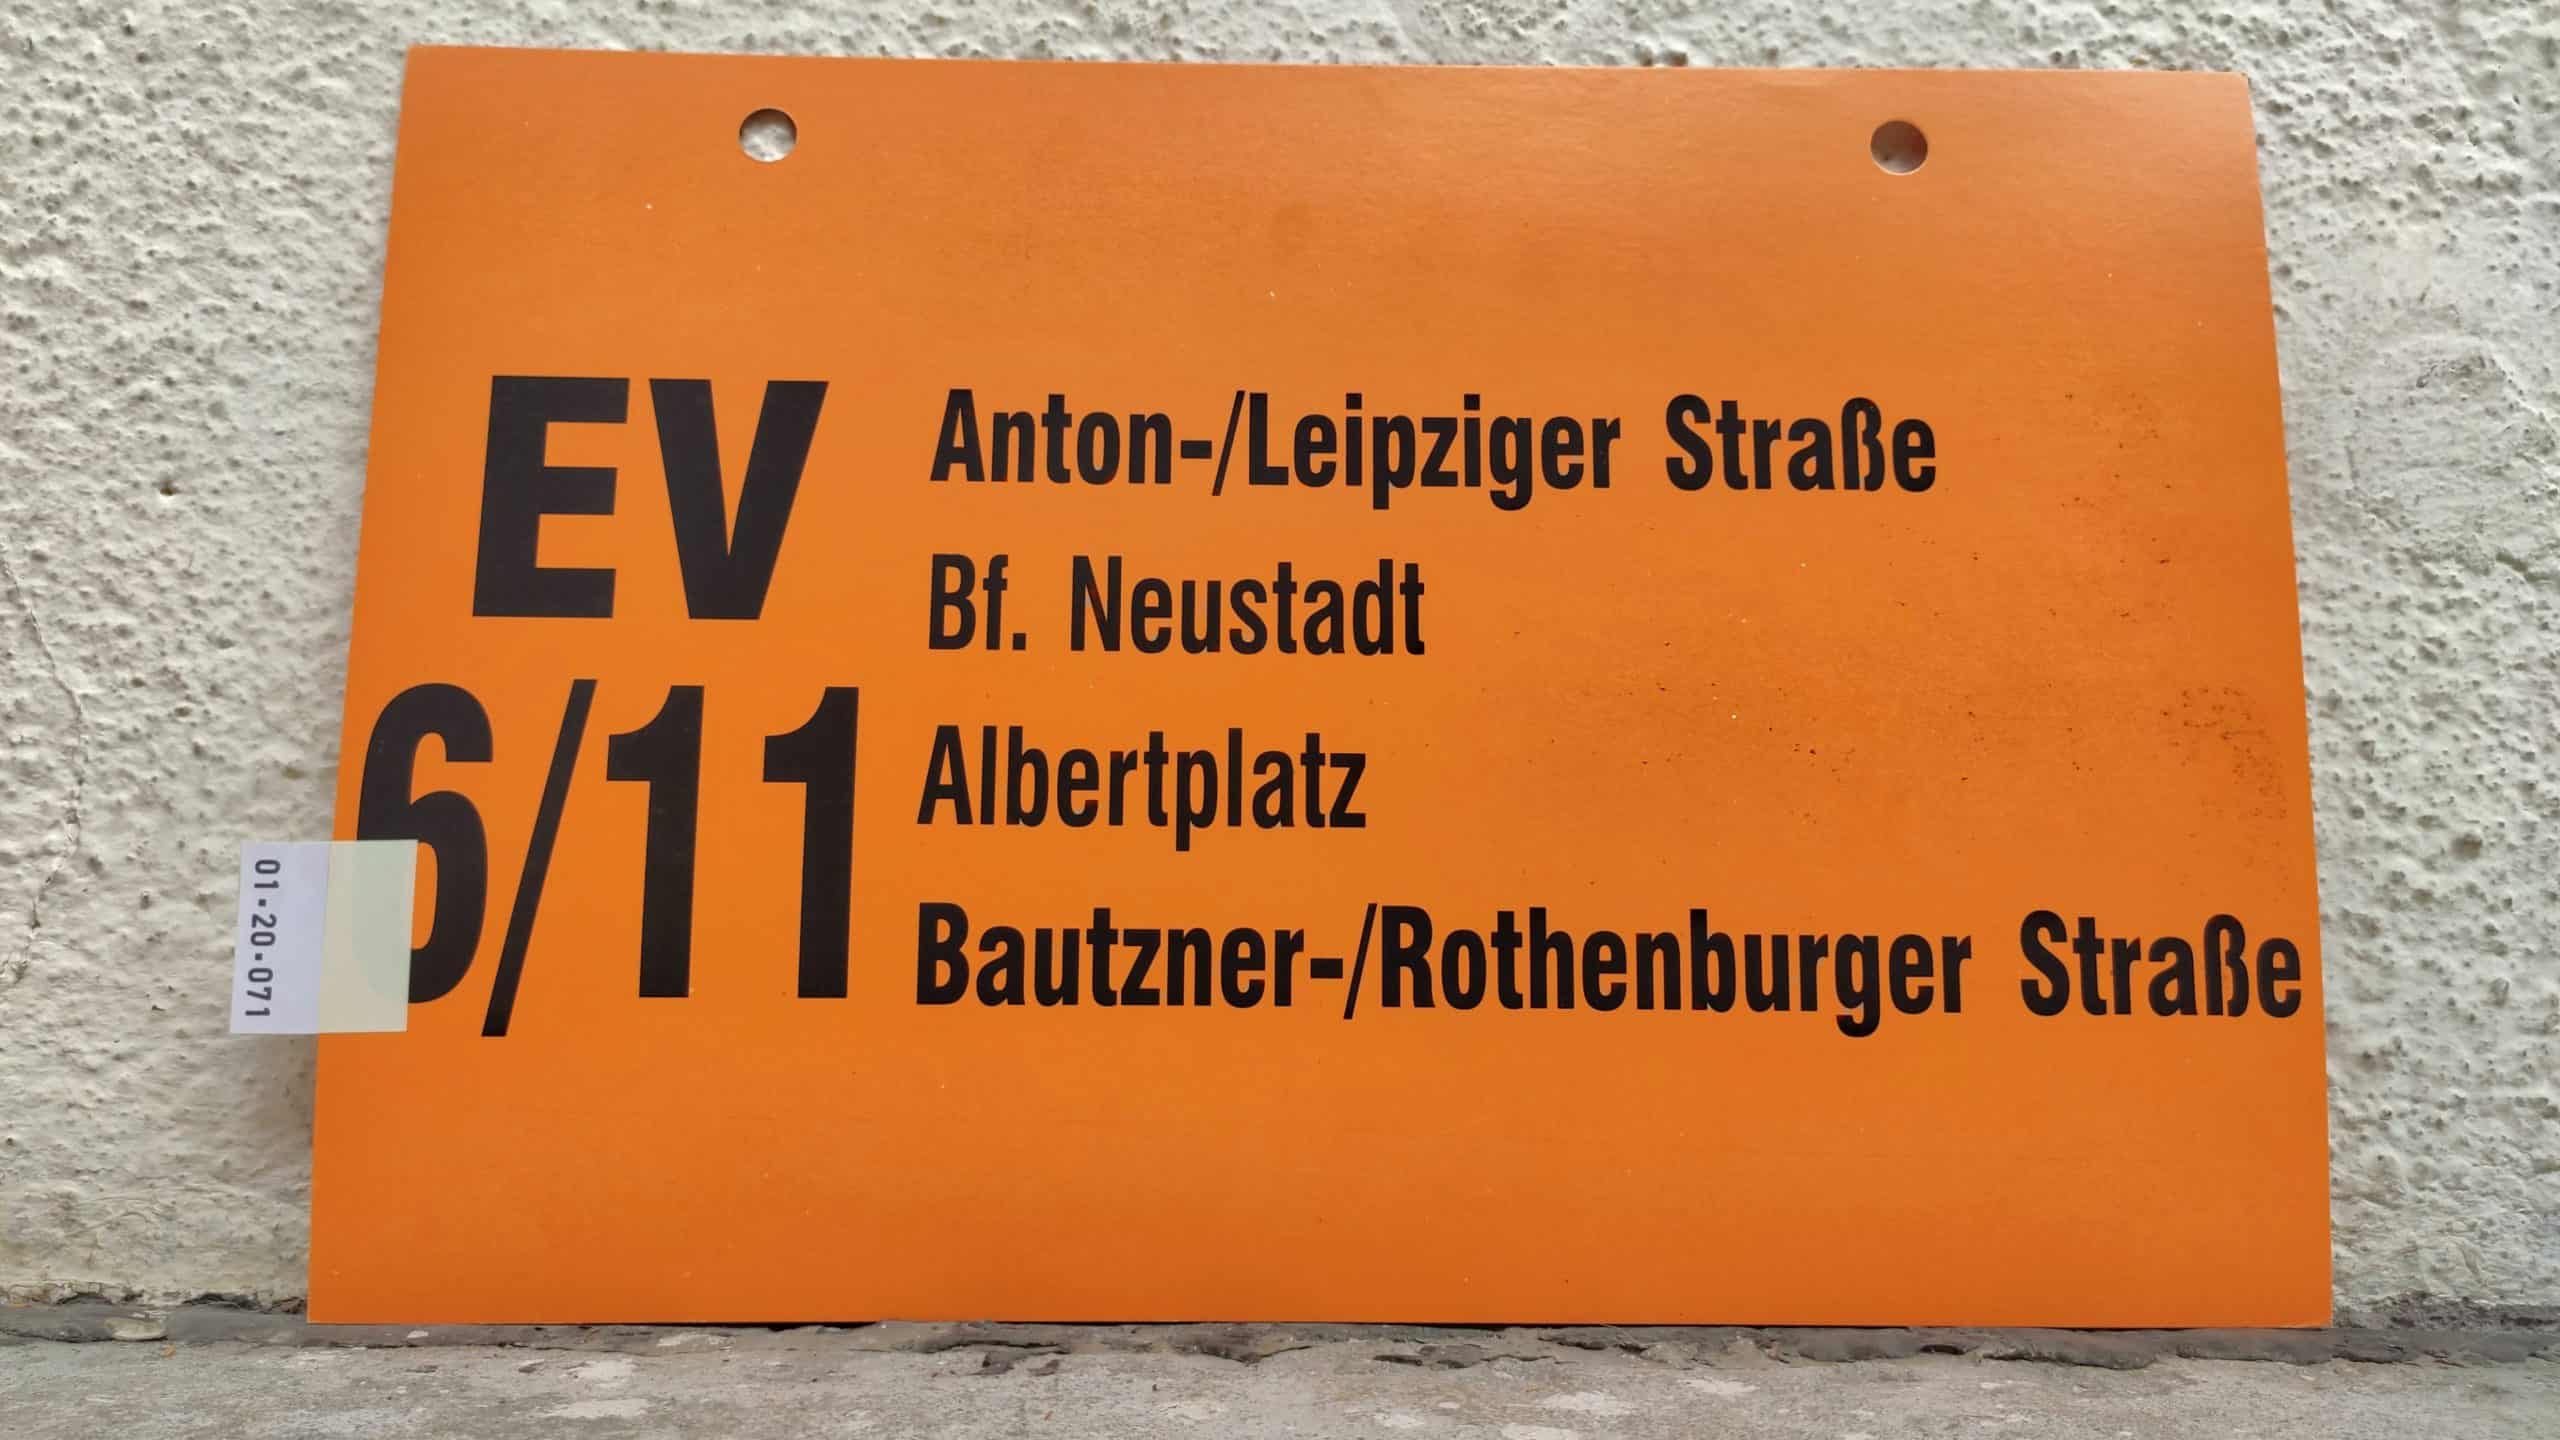 EV 6/11 Anton-/Leipziger Straße – Bautzner-/Rothenburger Straße #1